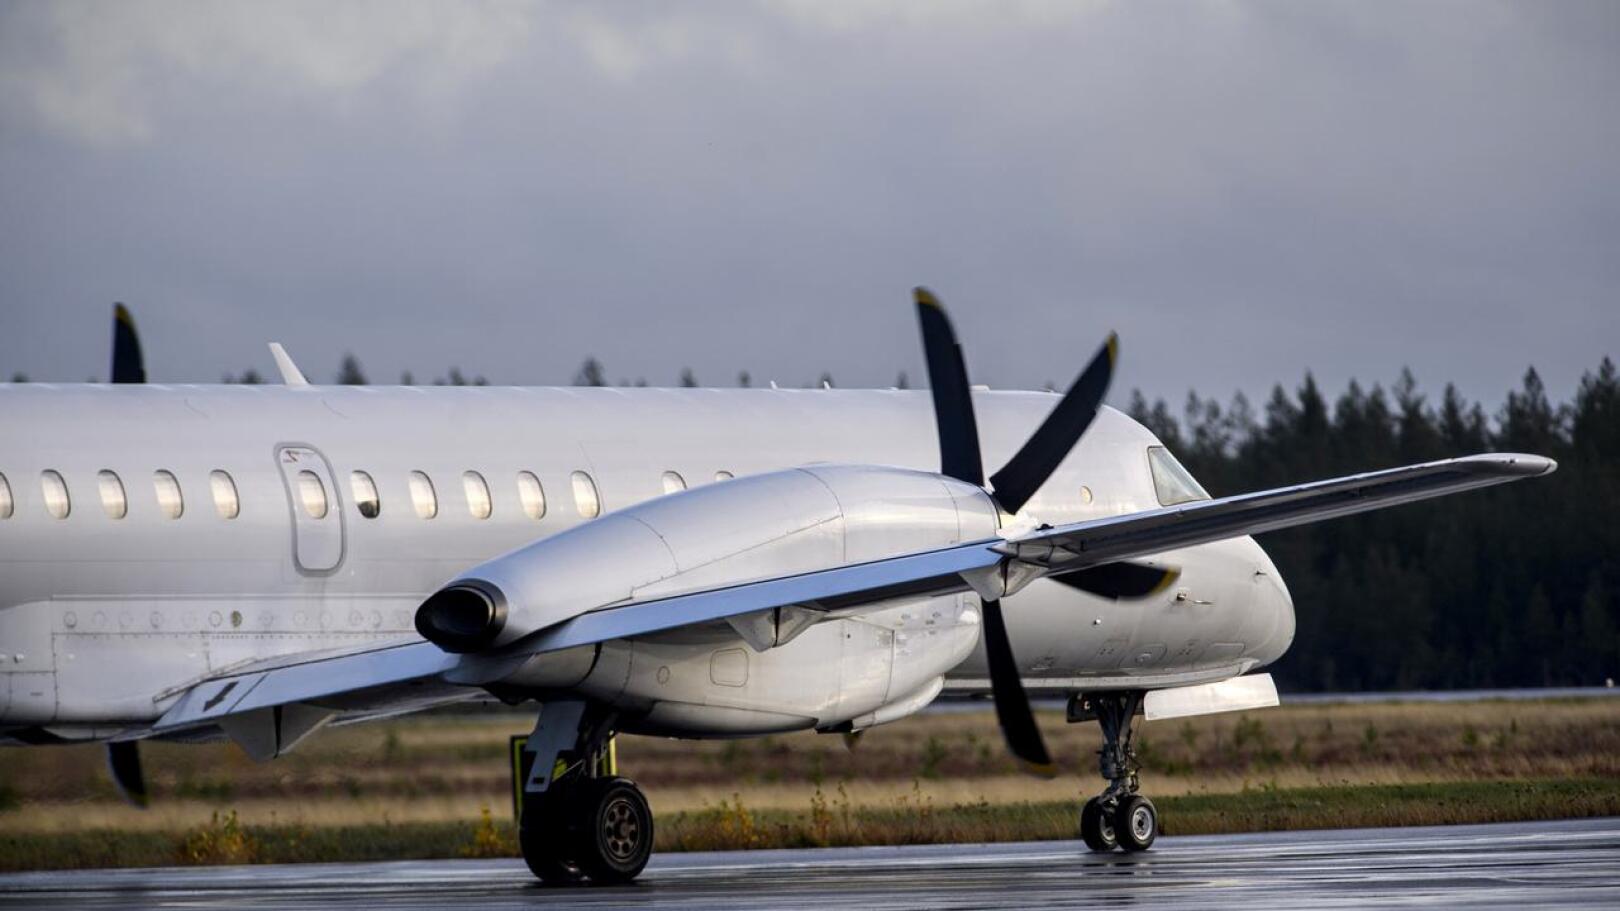 NyxAir lentää Kruunupyyn ja Helsingin välillä Saab 2000 -koneella, jossa on paikkoja 50 matkustajalle.